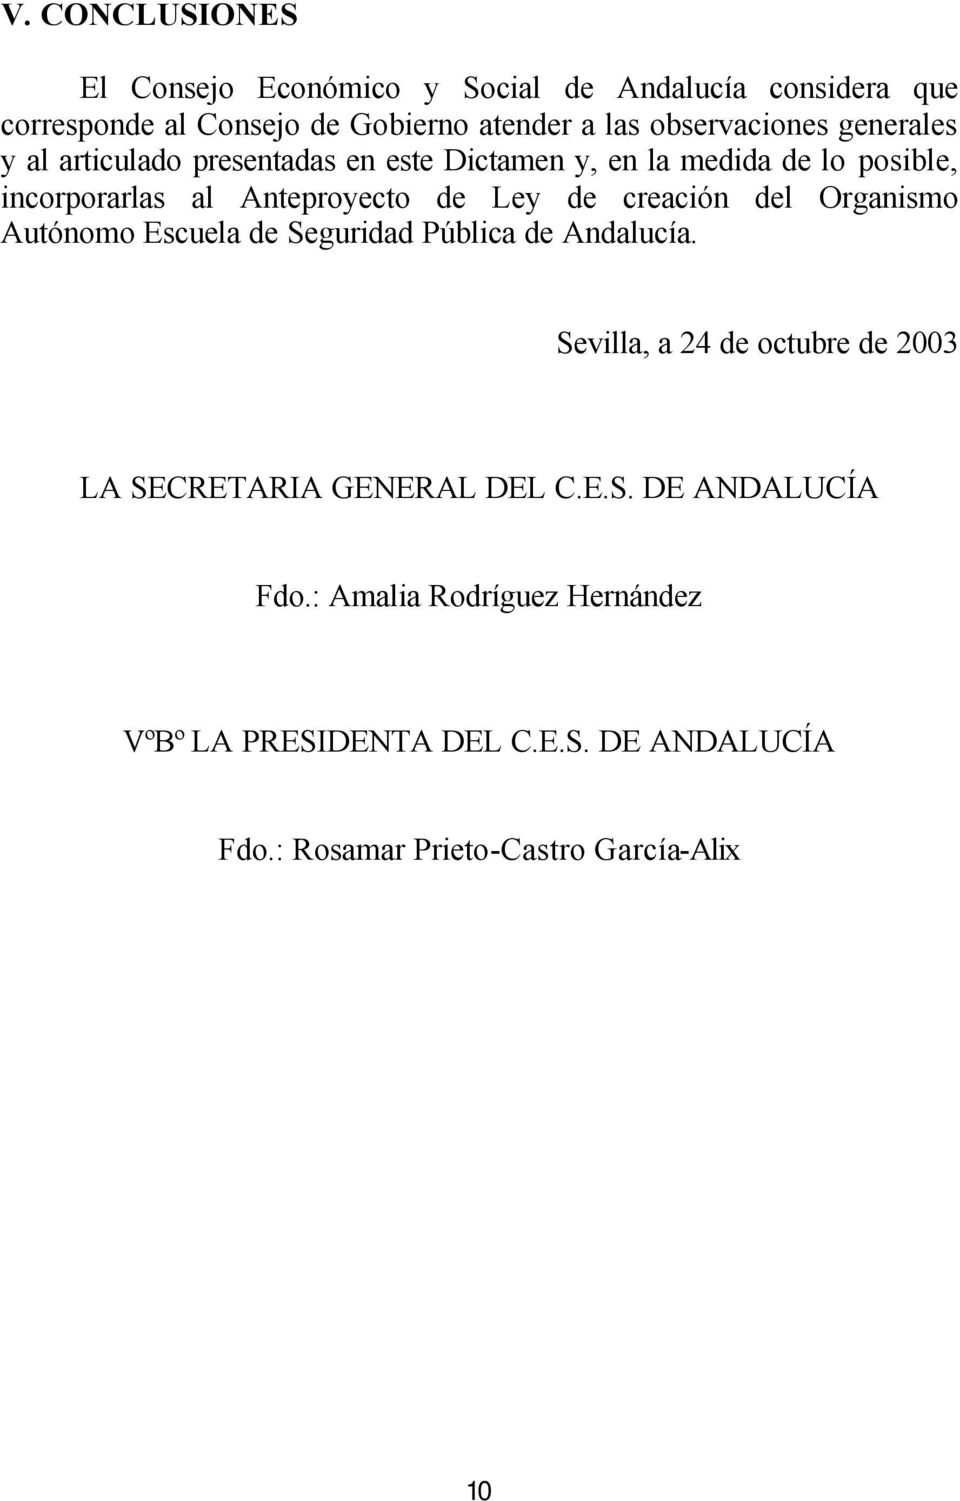 Ley de creación del Organismo Autónomo Escuela de Seguridad Pública de Andalucía.